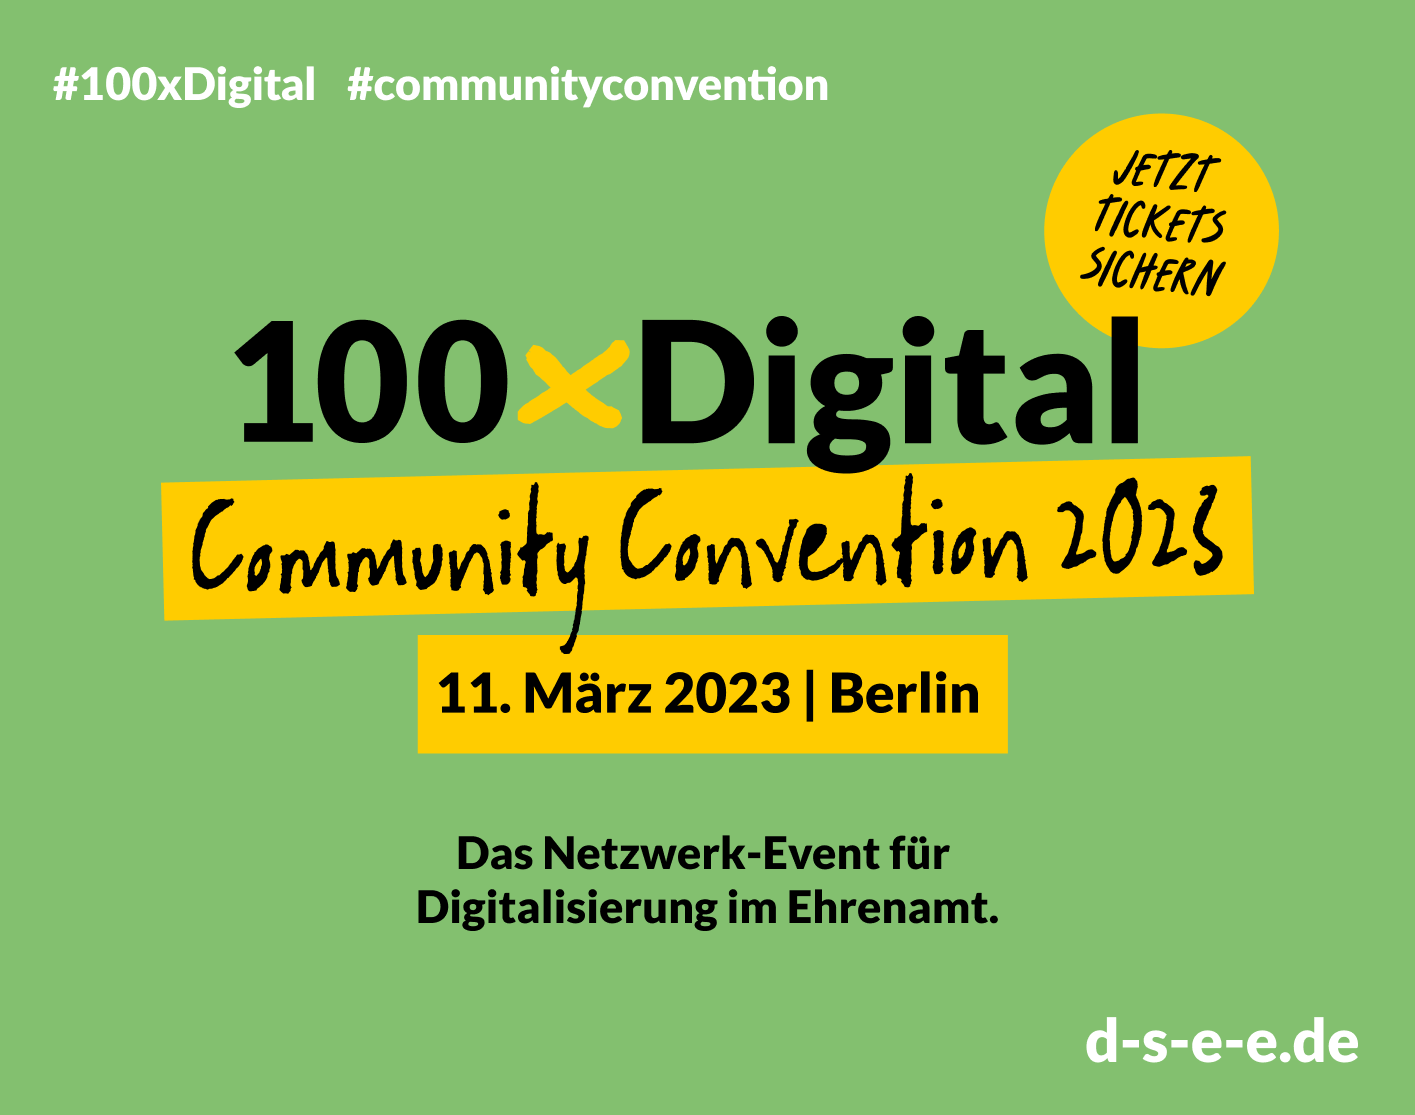 Grafik mit dem Text: #100xDigital #CommunityConvention Jetzt Tickets sichern 100xDigital Community Convention 2023 11. März 2023 | Berlin Das Netzwerk-Event für Digitalisierung im Ehrenamt d-s-e-e.de